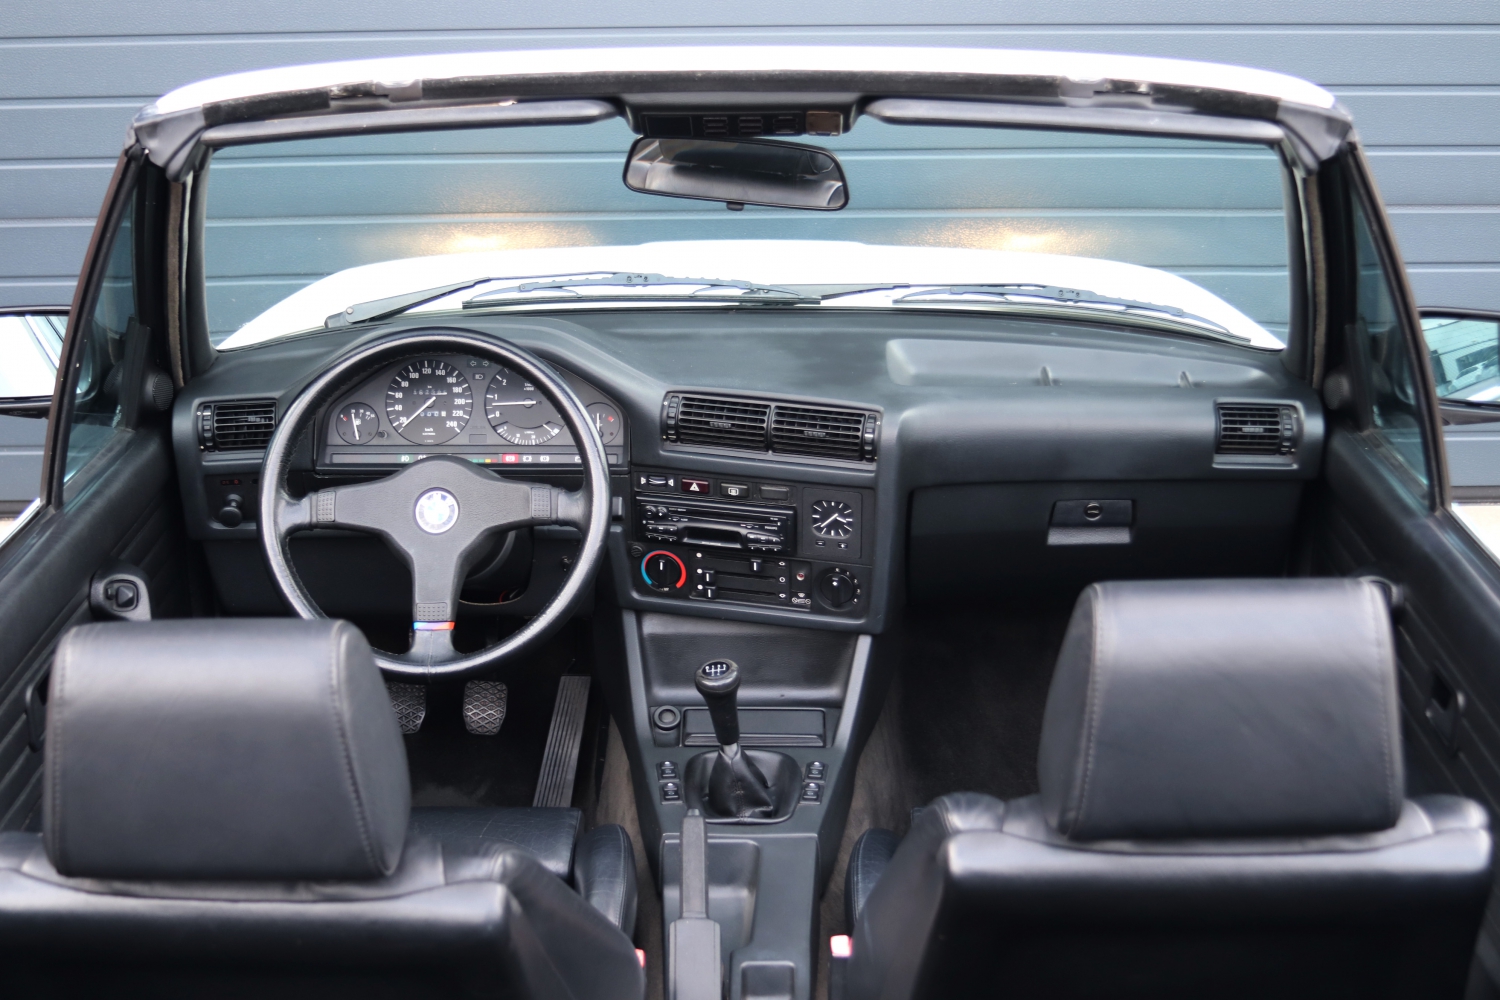 BMW-325i-Cabriolet-E30-1986-65RRT2-041.JPG